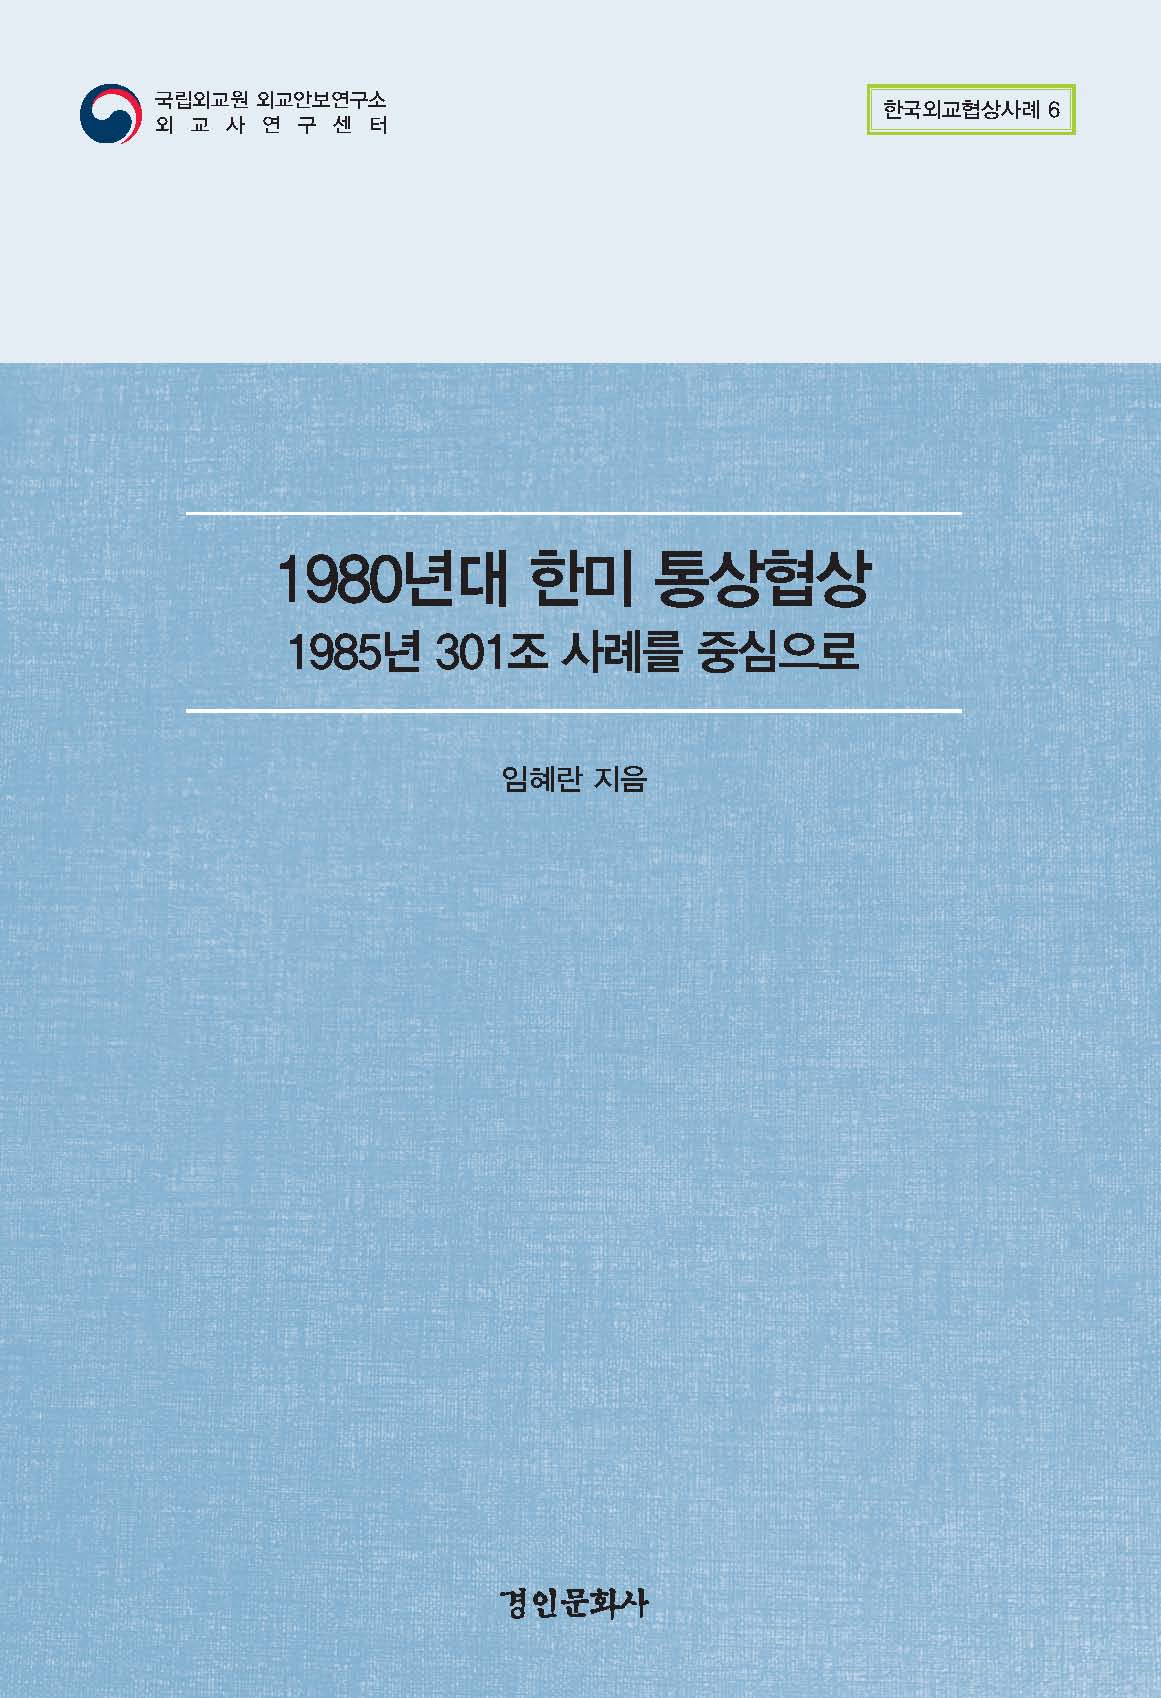 한국외교협상사례 총서 6권 『1980년대 한미 통상협상: 1985년 301조 사례를 중심으로』